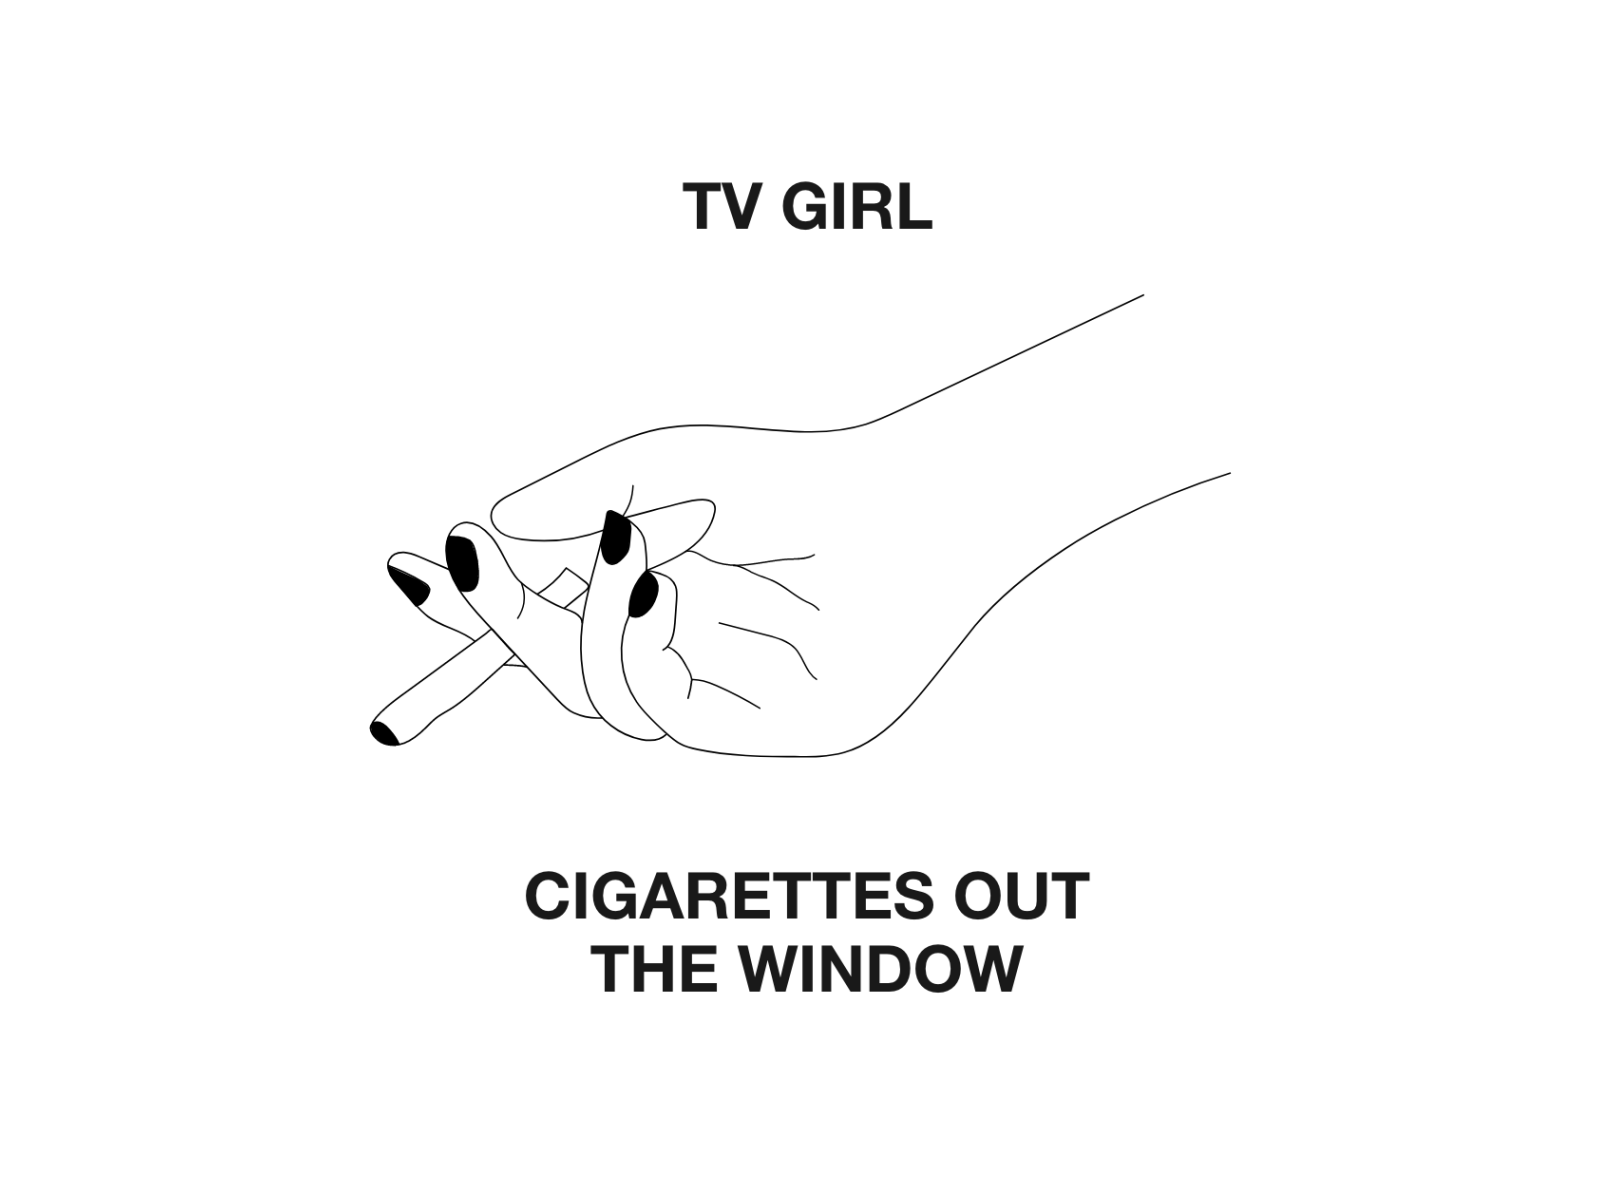 Cigarettes Out The Window by Derek Longe on Dribbble